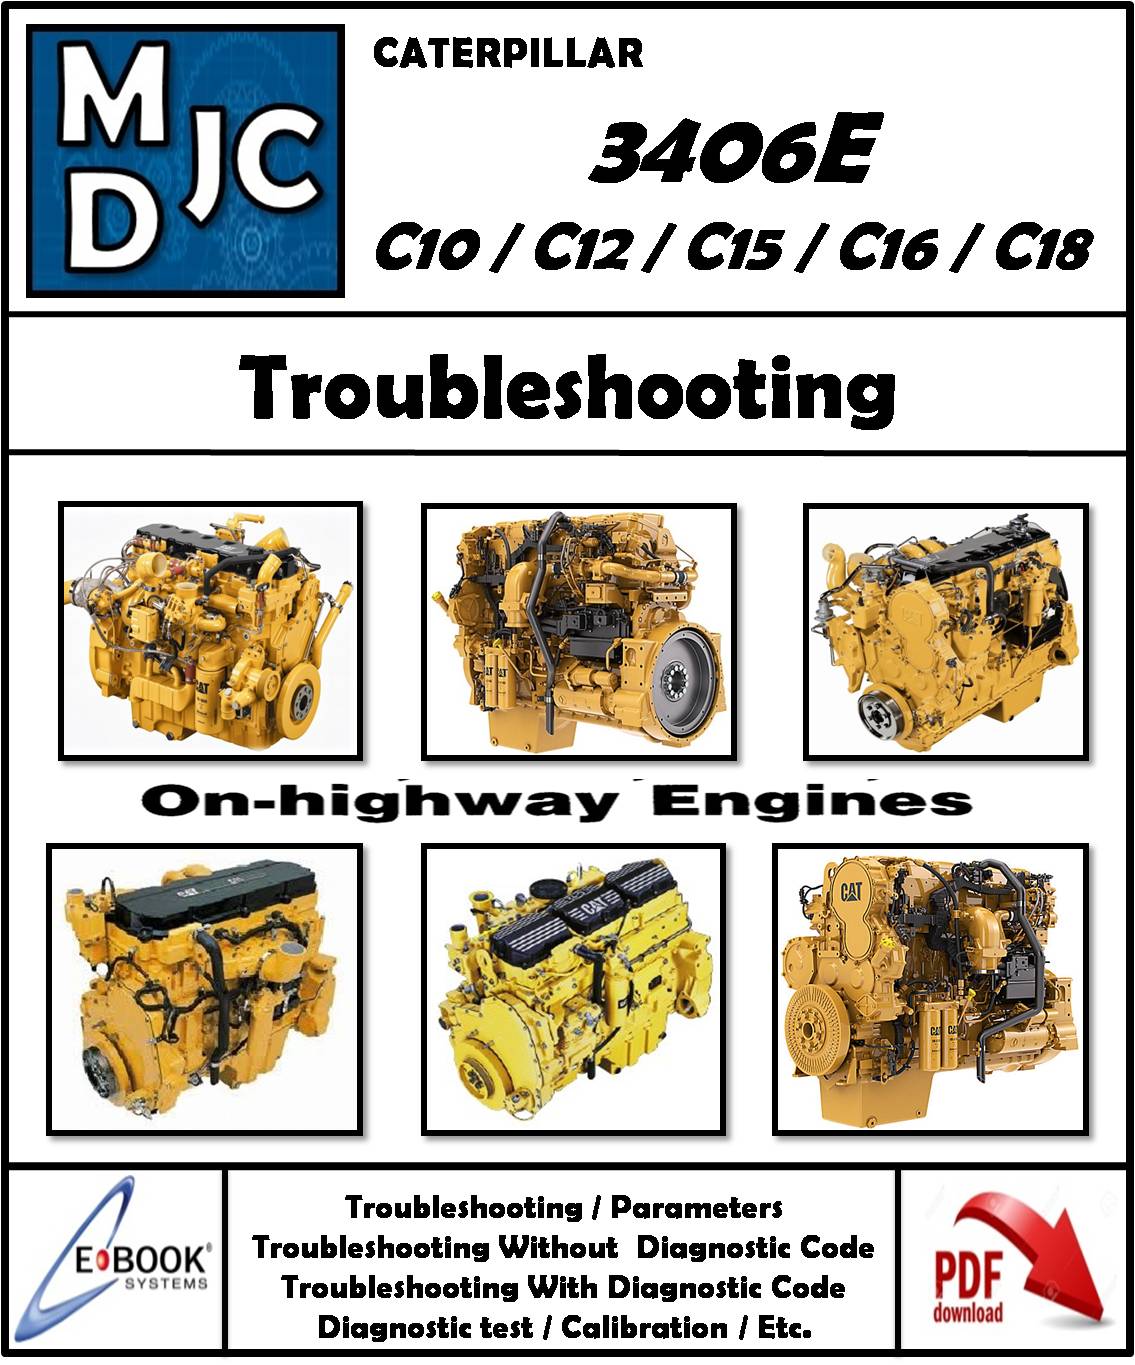 Manual de Fallas Motor Caterpillar 3406E / C10 / C12 / C15 / C16 / C18